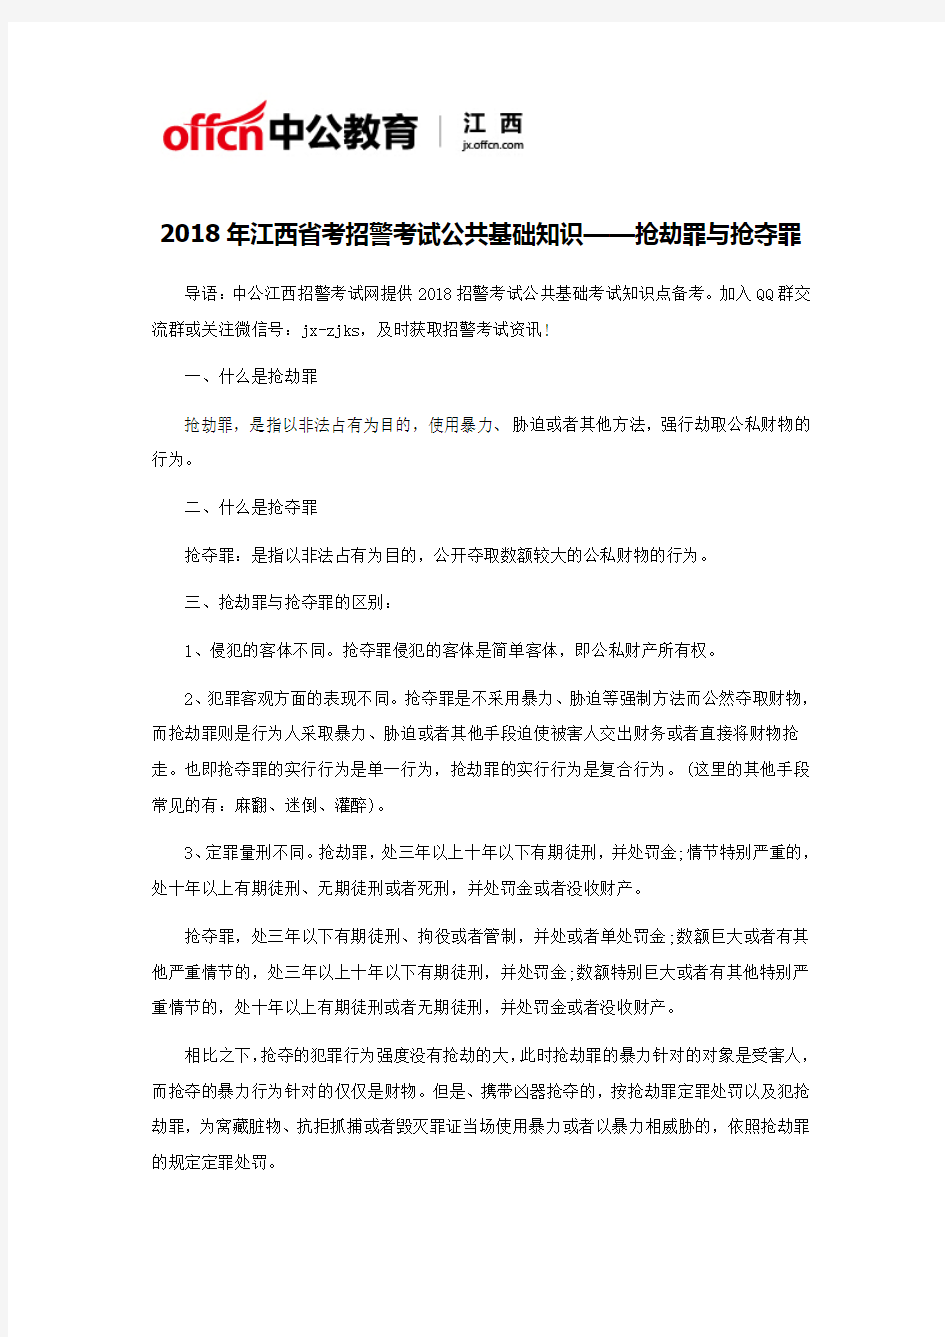 2018年江西省考招警考试公共基础知识——抢劫罪与抢夺罪